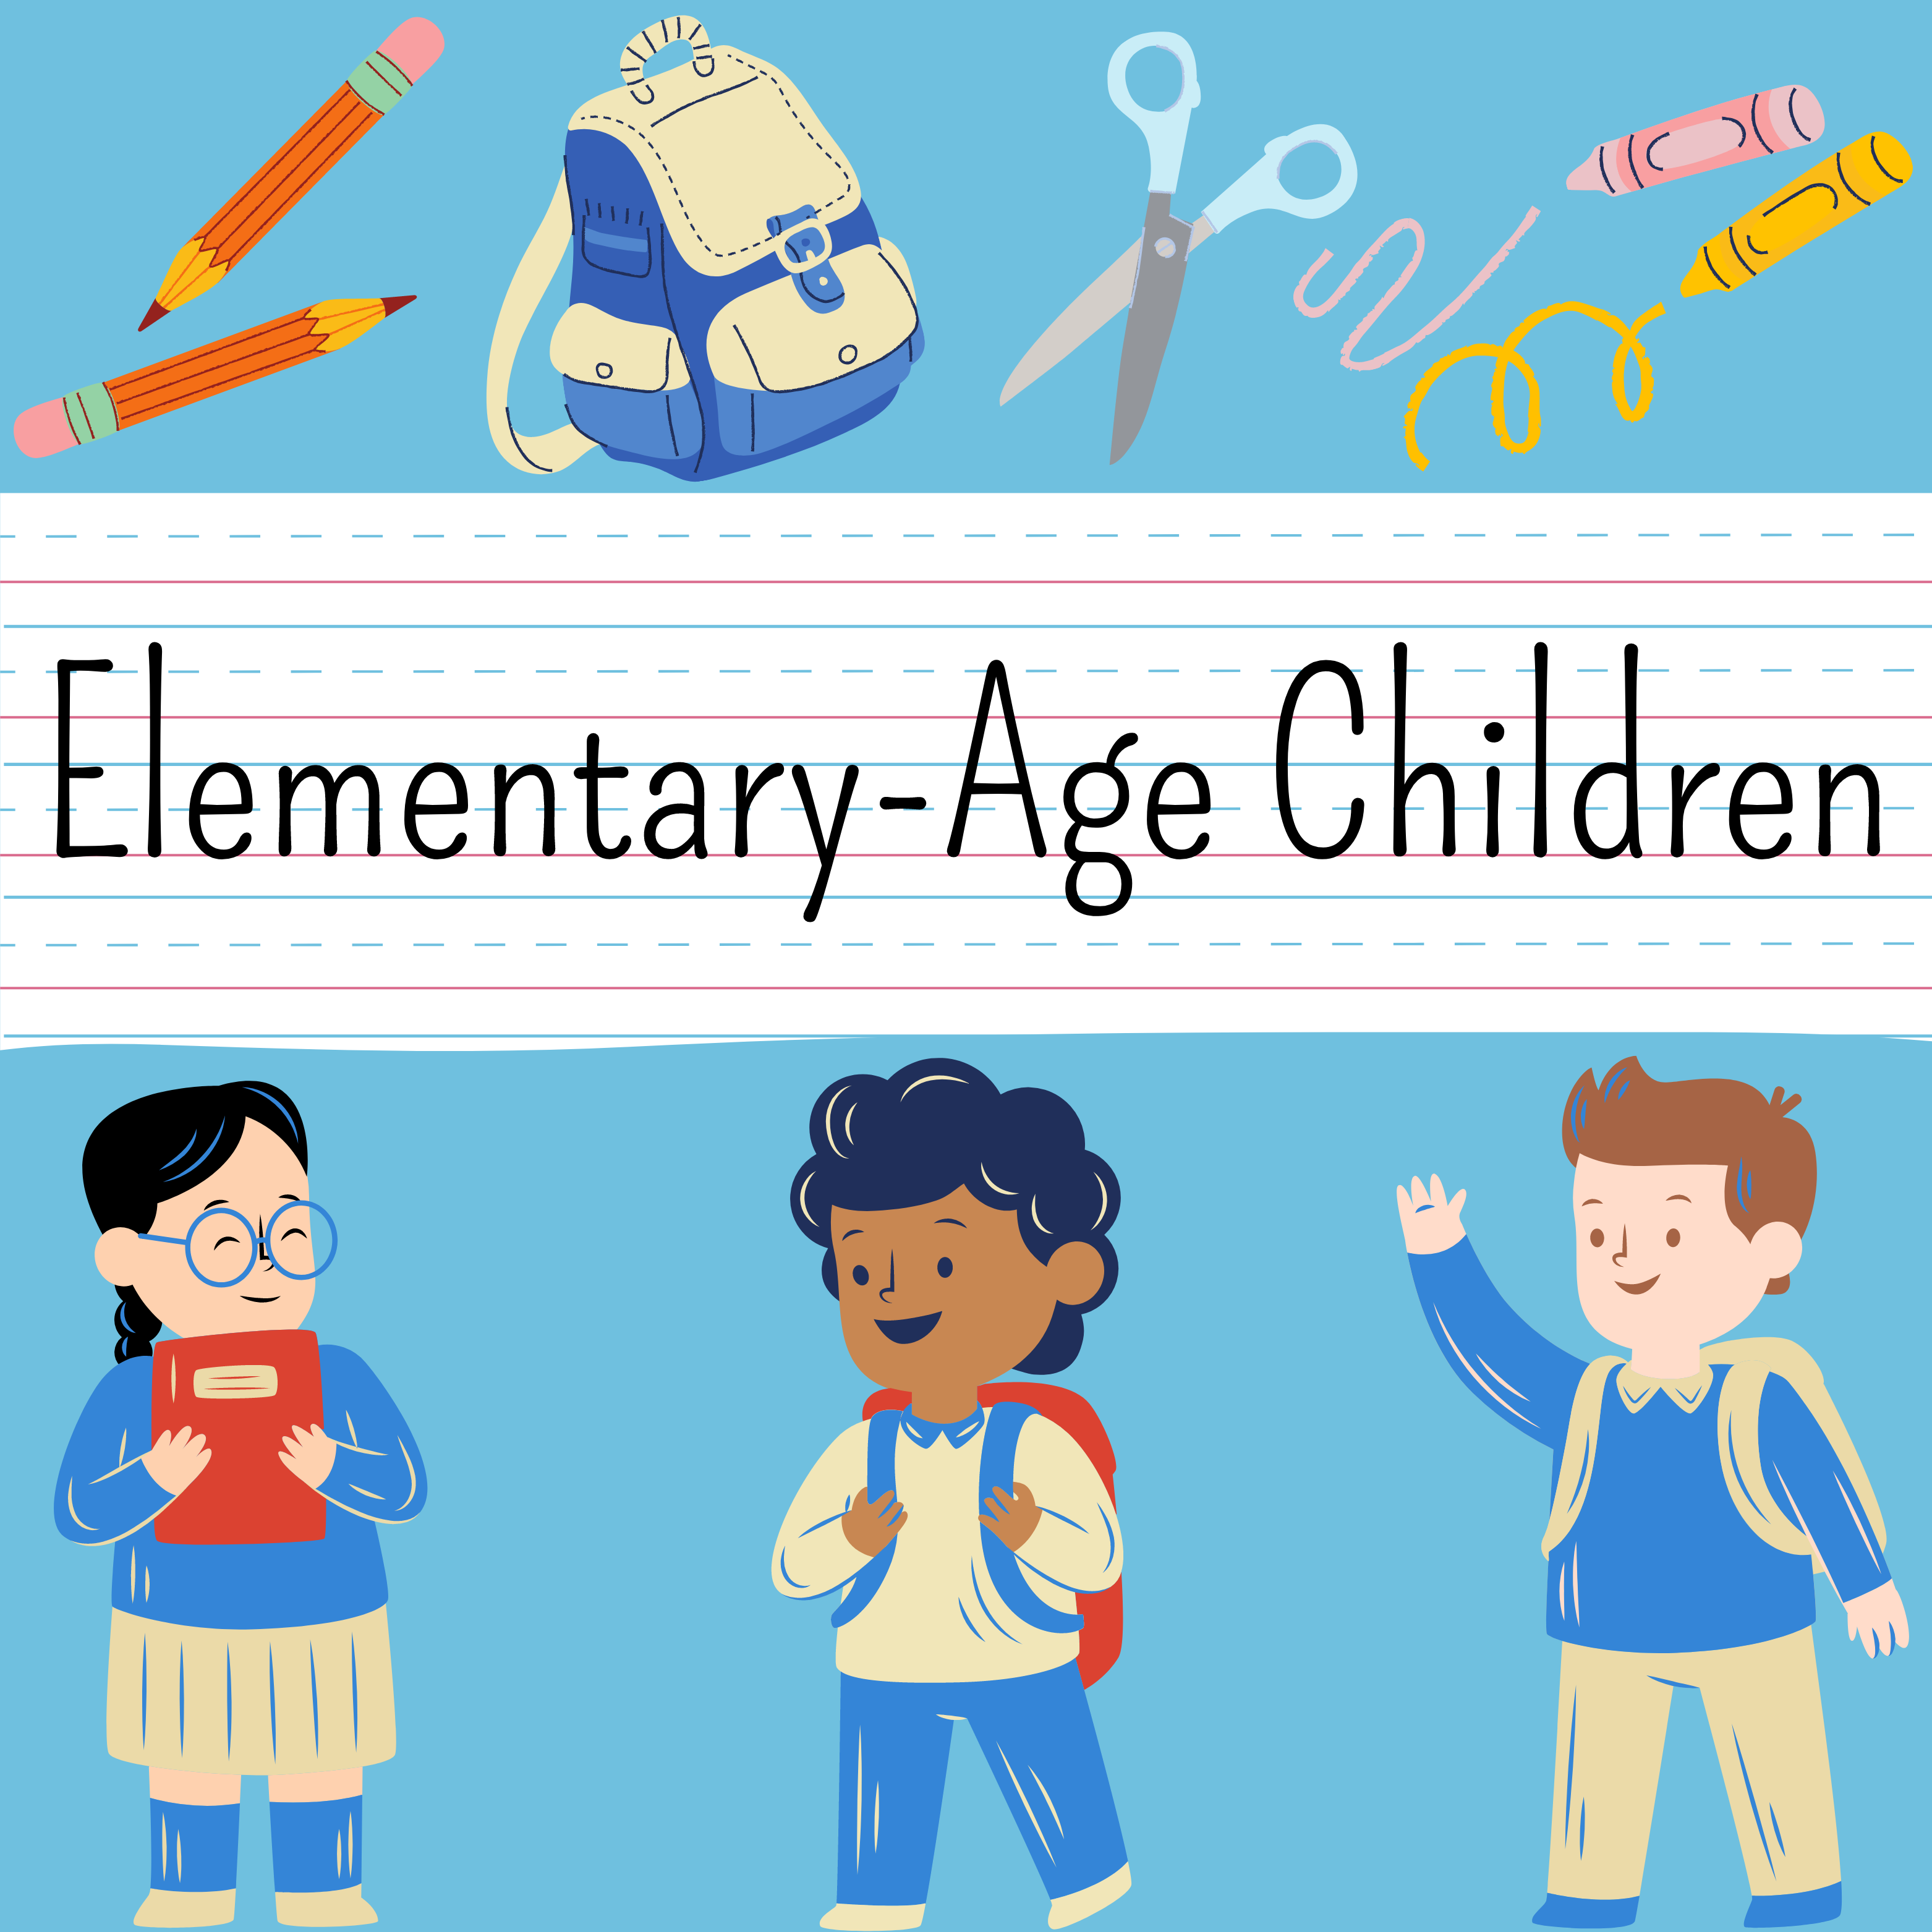 Elementary-Age Children